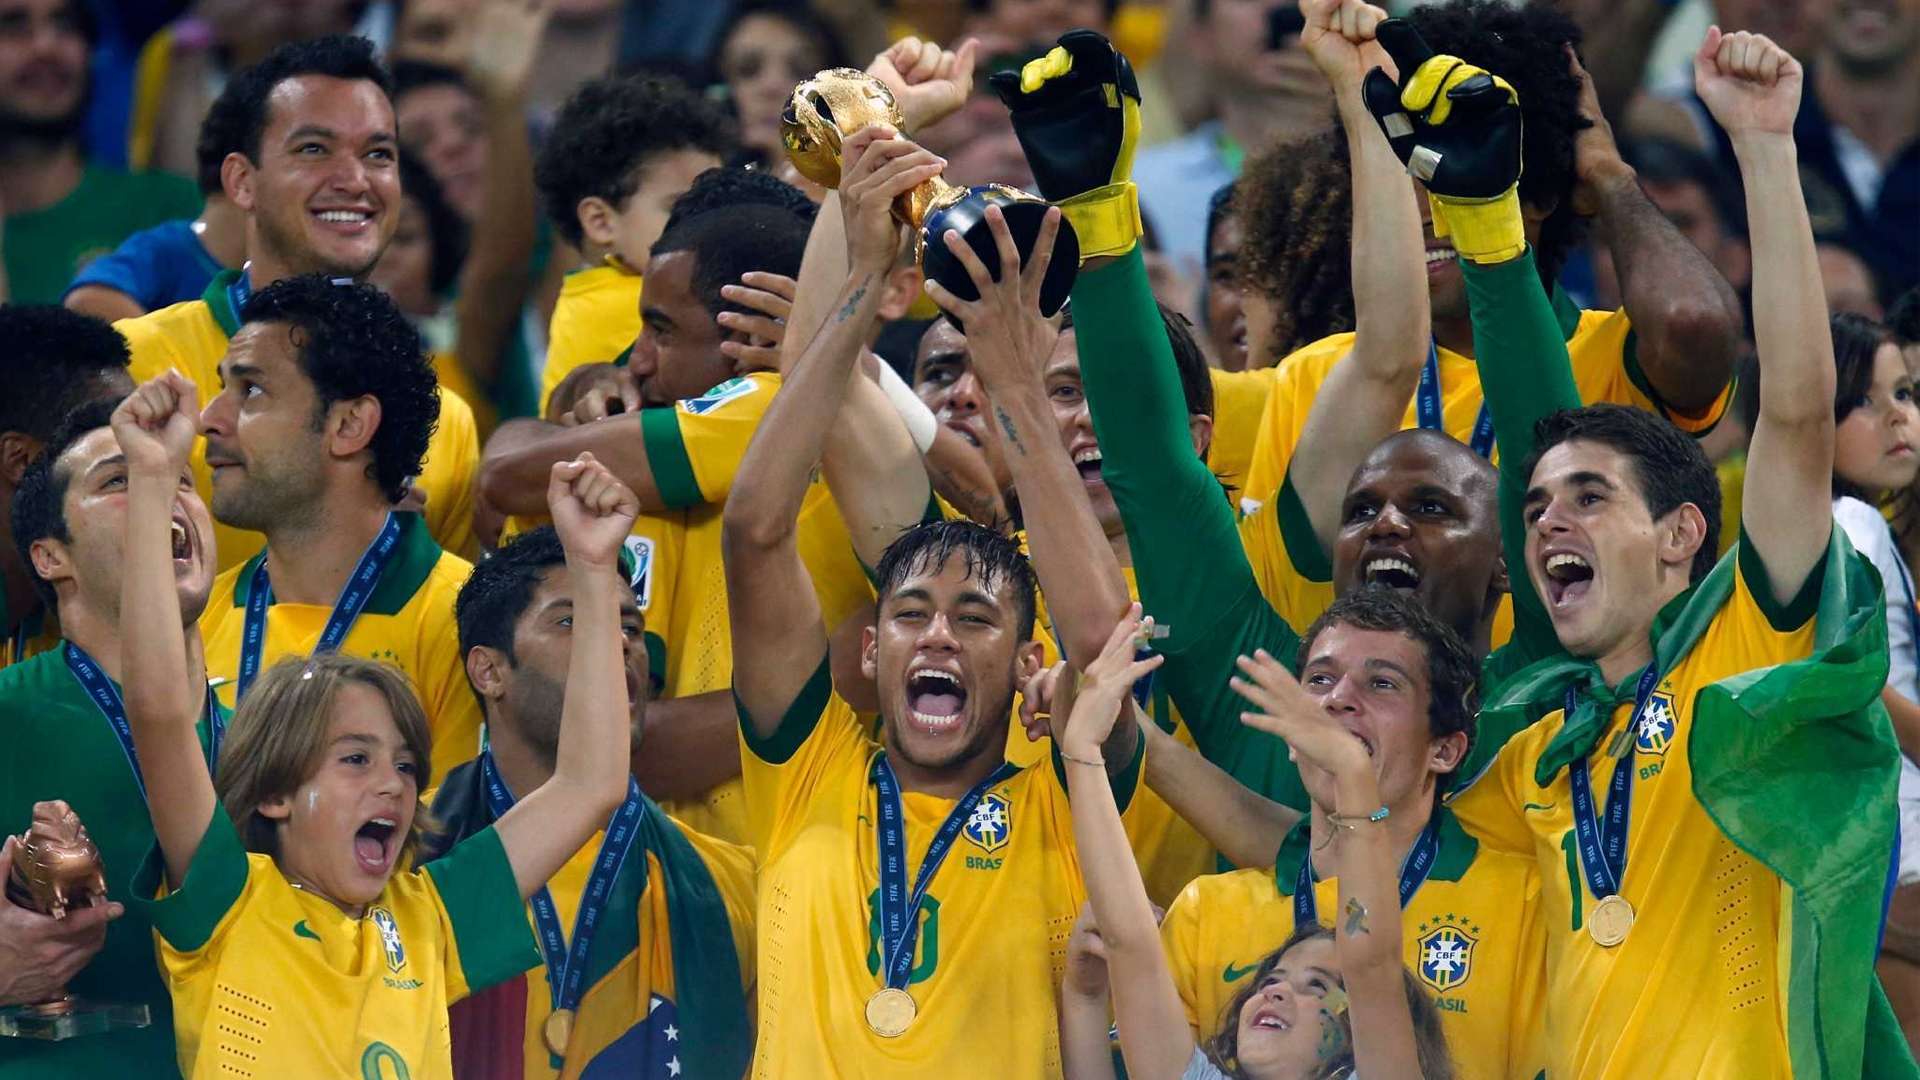 Confederations Cup 2013 - Brazil